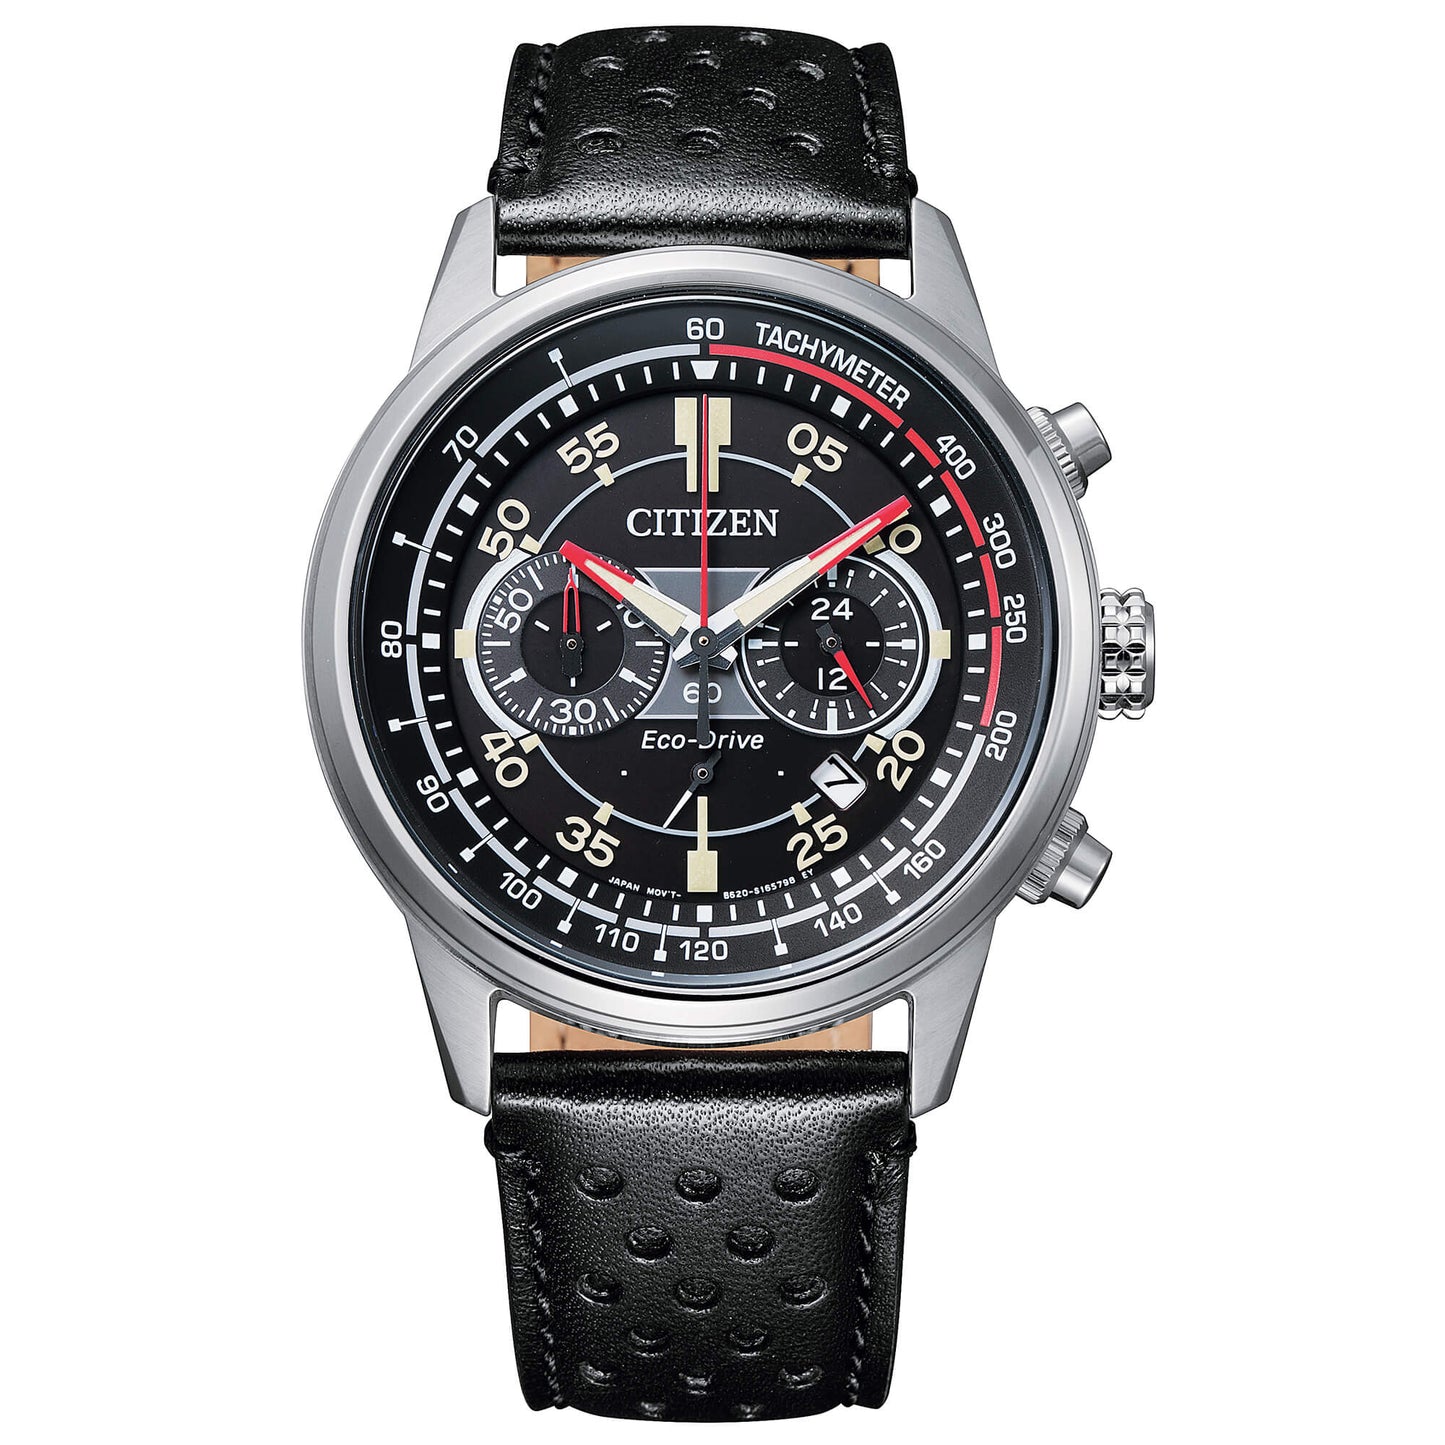 Citizen Crono Racing orologio da uomo cronografo eco drive con cassa in acciaio, cinturino in pelle nero e quadrante nero - Codice orologio: CA4460-19E